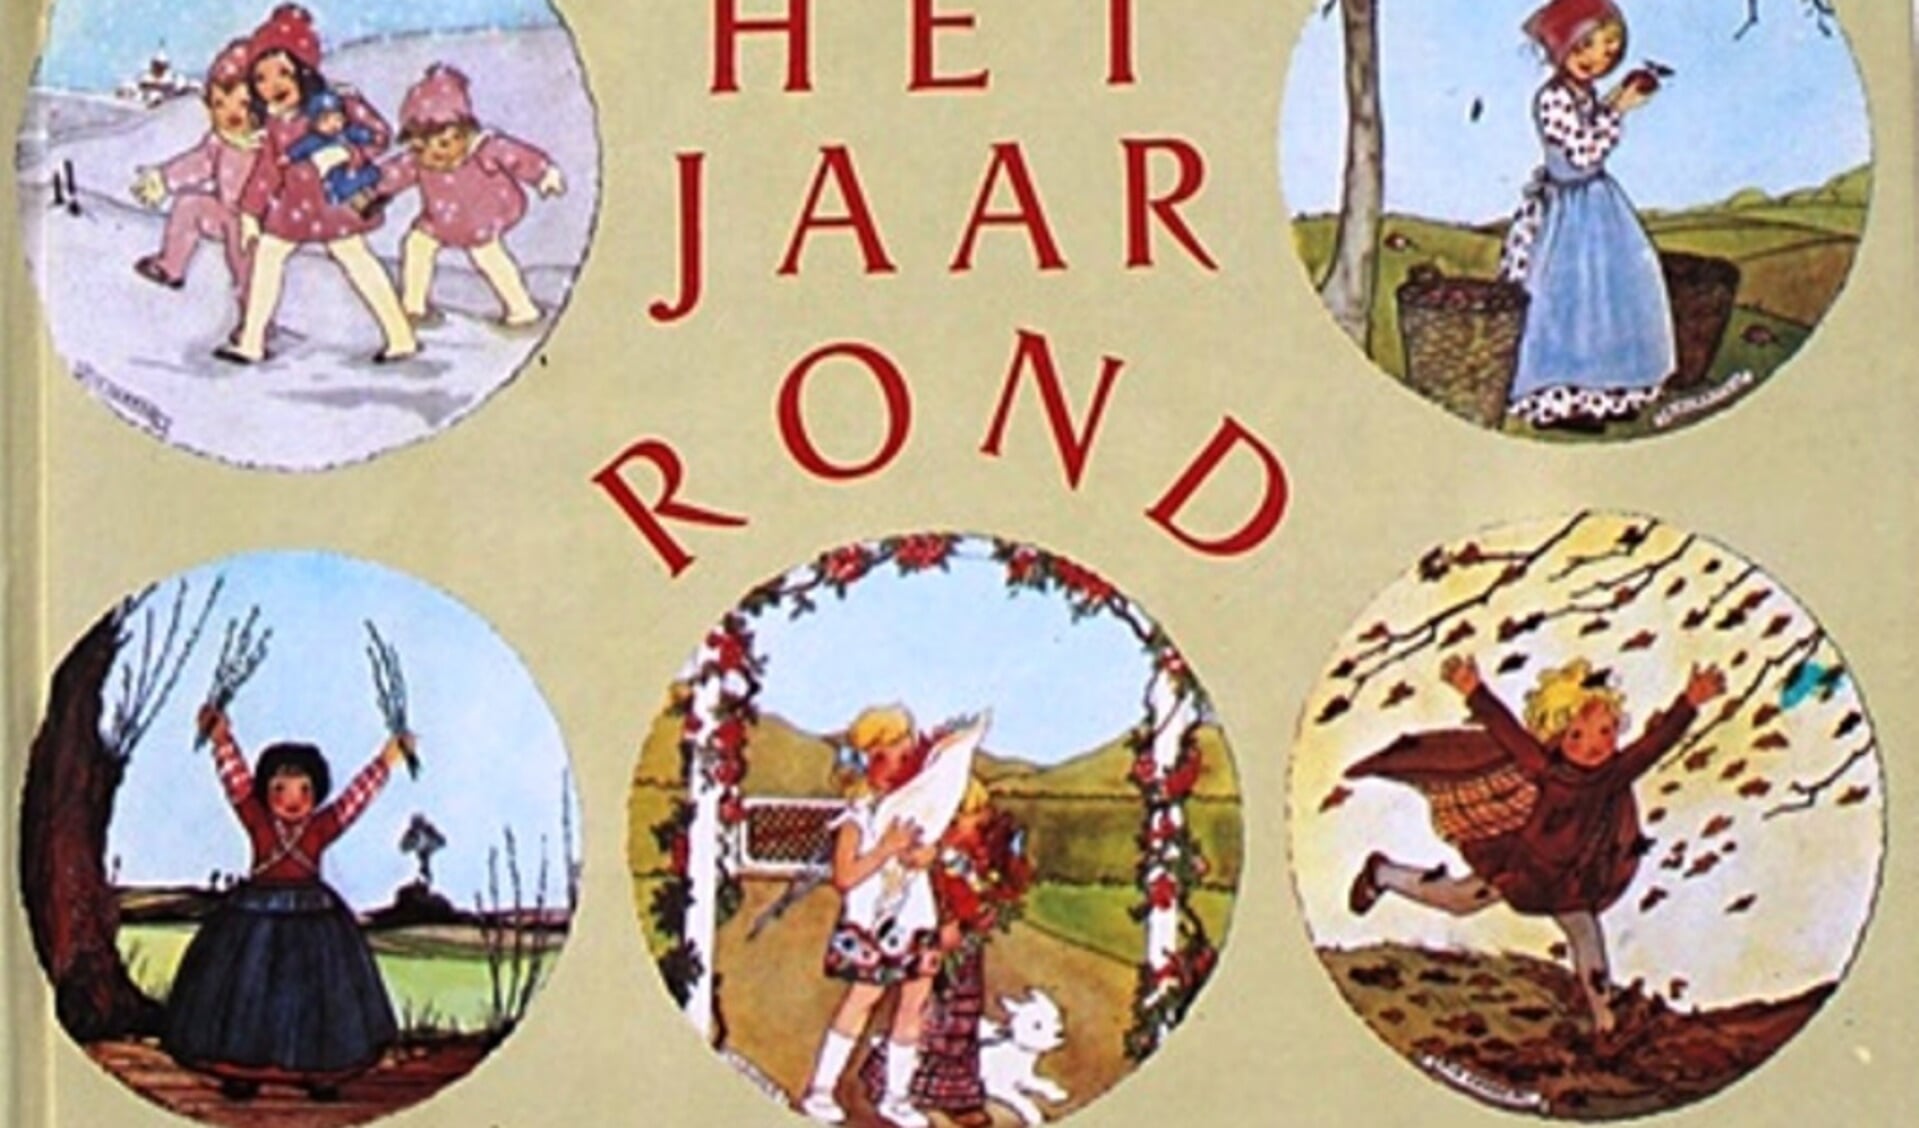 Rie Cramer was een Nederlandse illustrator, boekbandontwerper en schrijver.